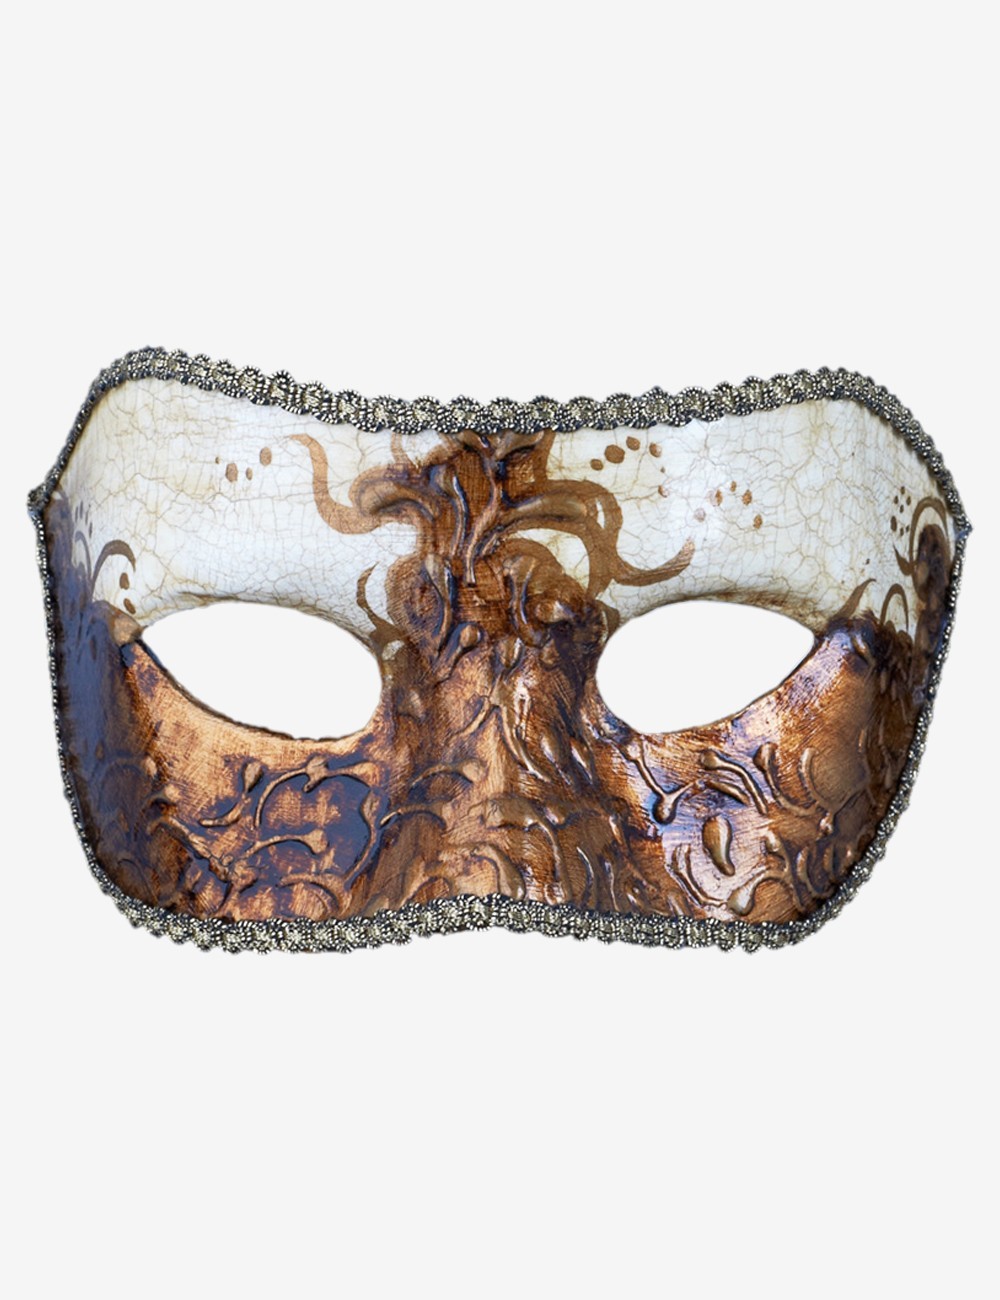 Bianca maschera veneziana in vendita